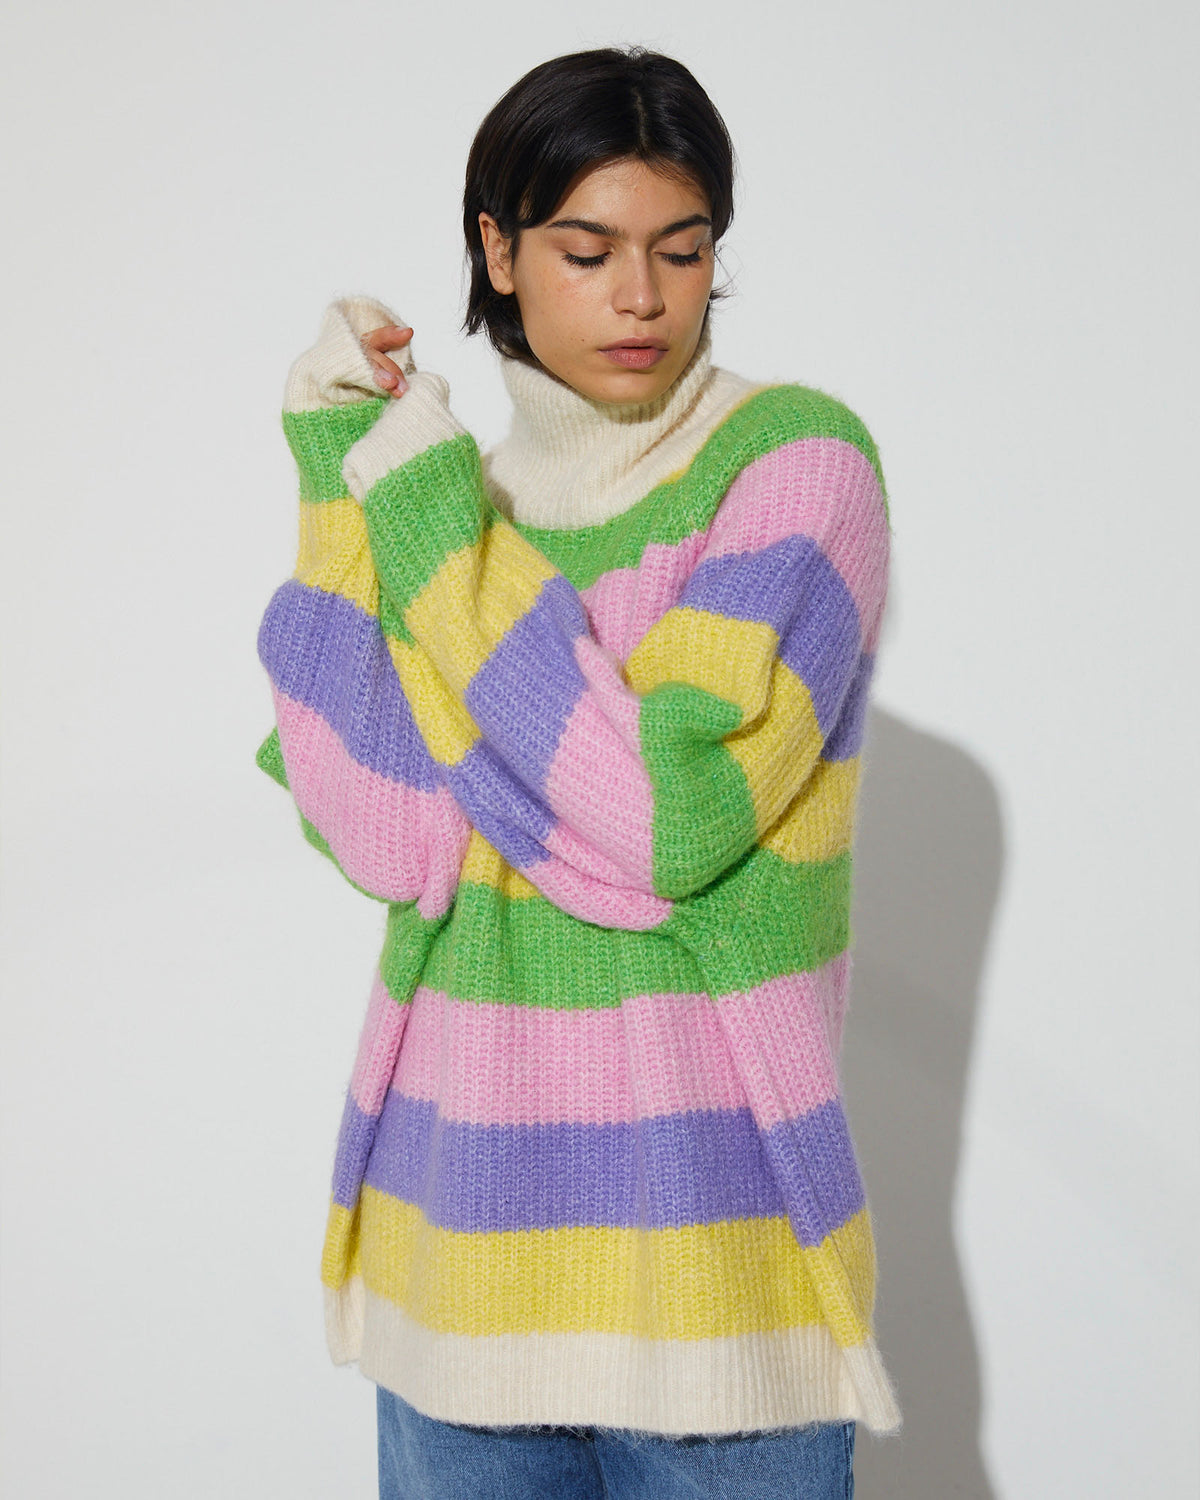 Merida Knitted Sweater